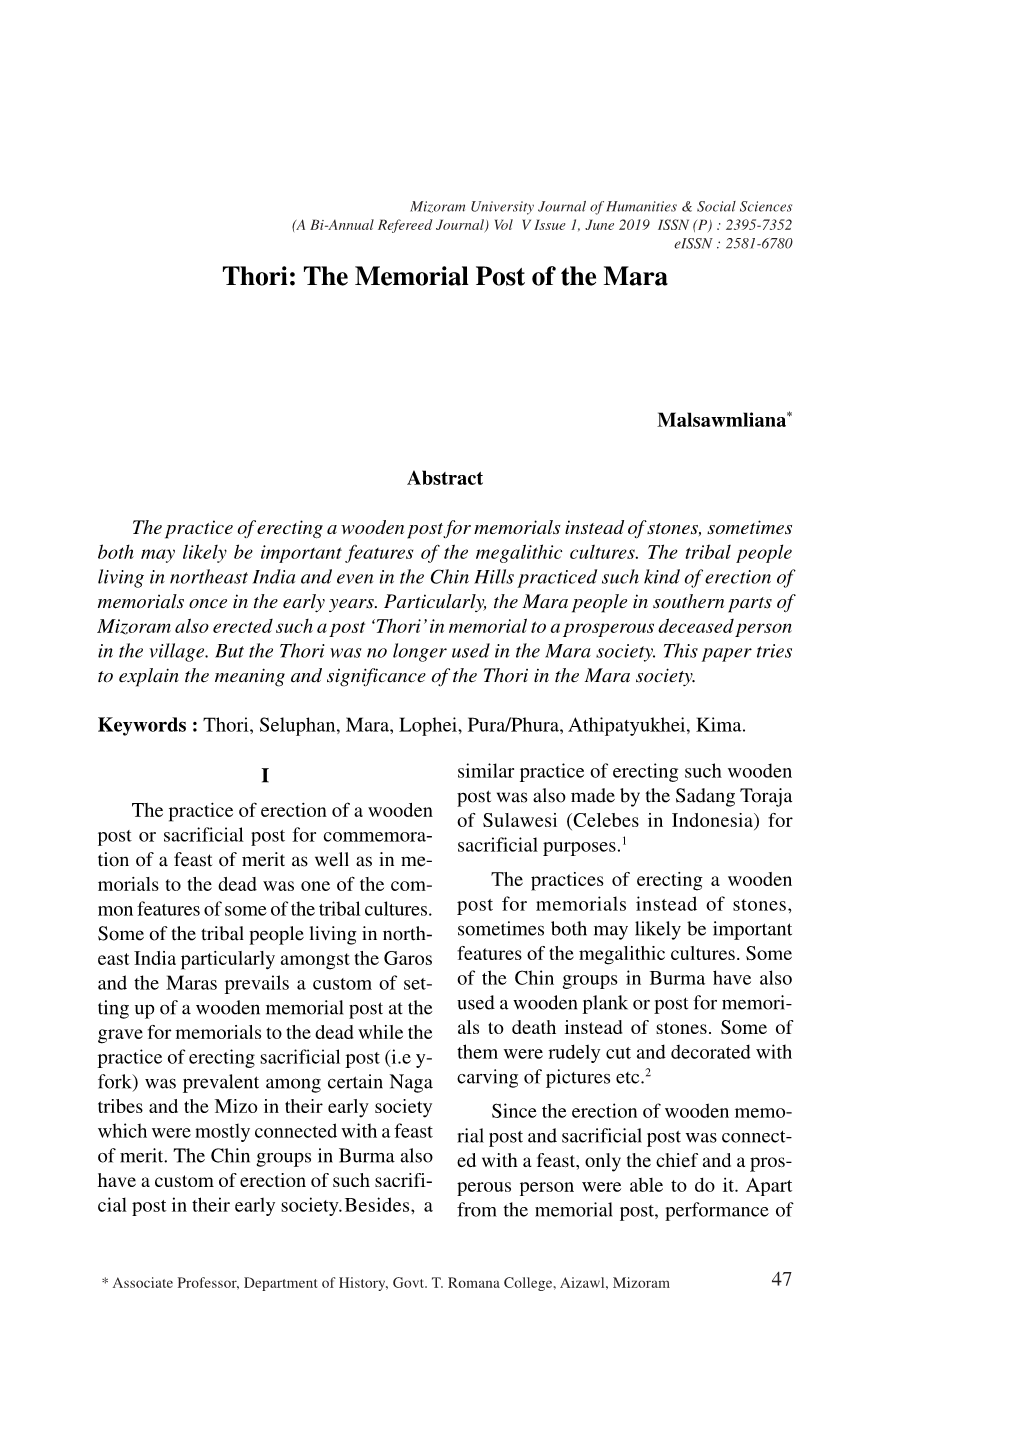 The Memorial Post of the Mara